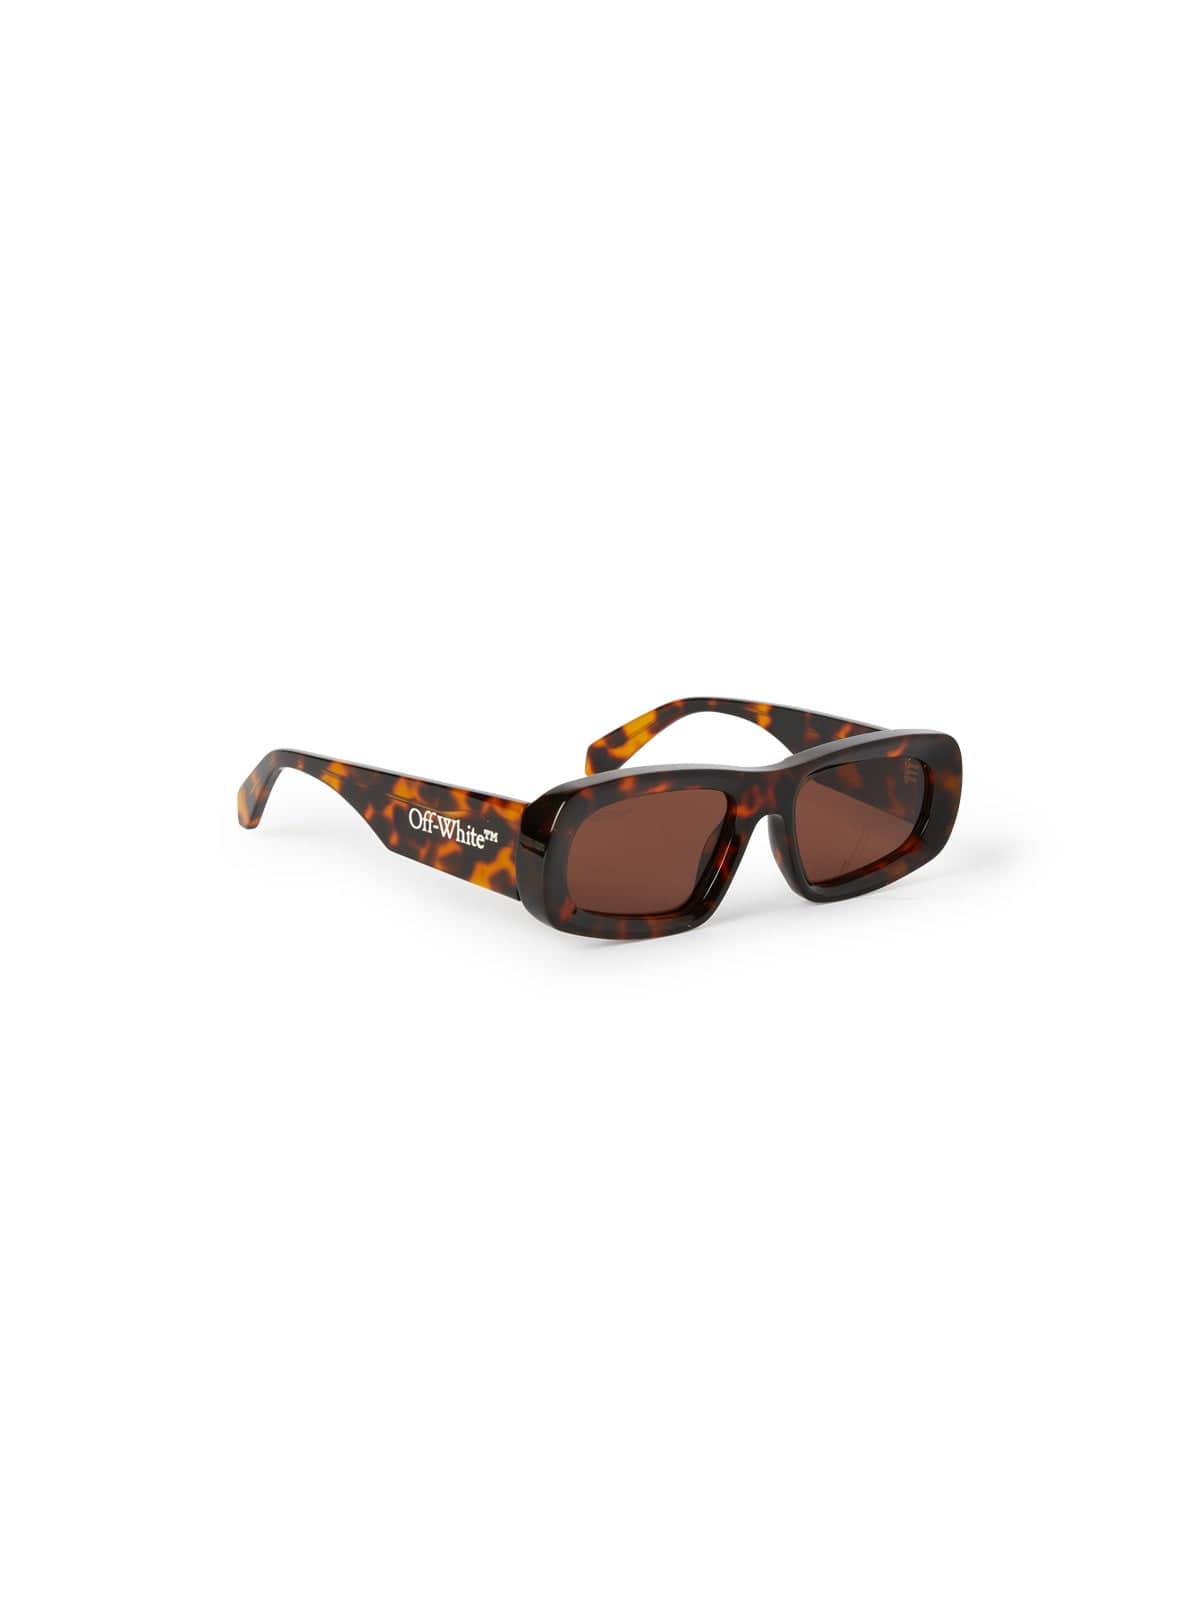 Off-White™ Occhiali da sole Havana marrone / Ovale Off-White Austin: occhiale da sole havana marroni con lenti marroni